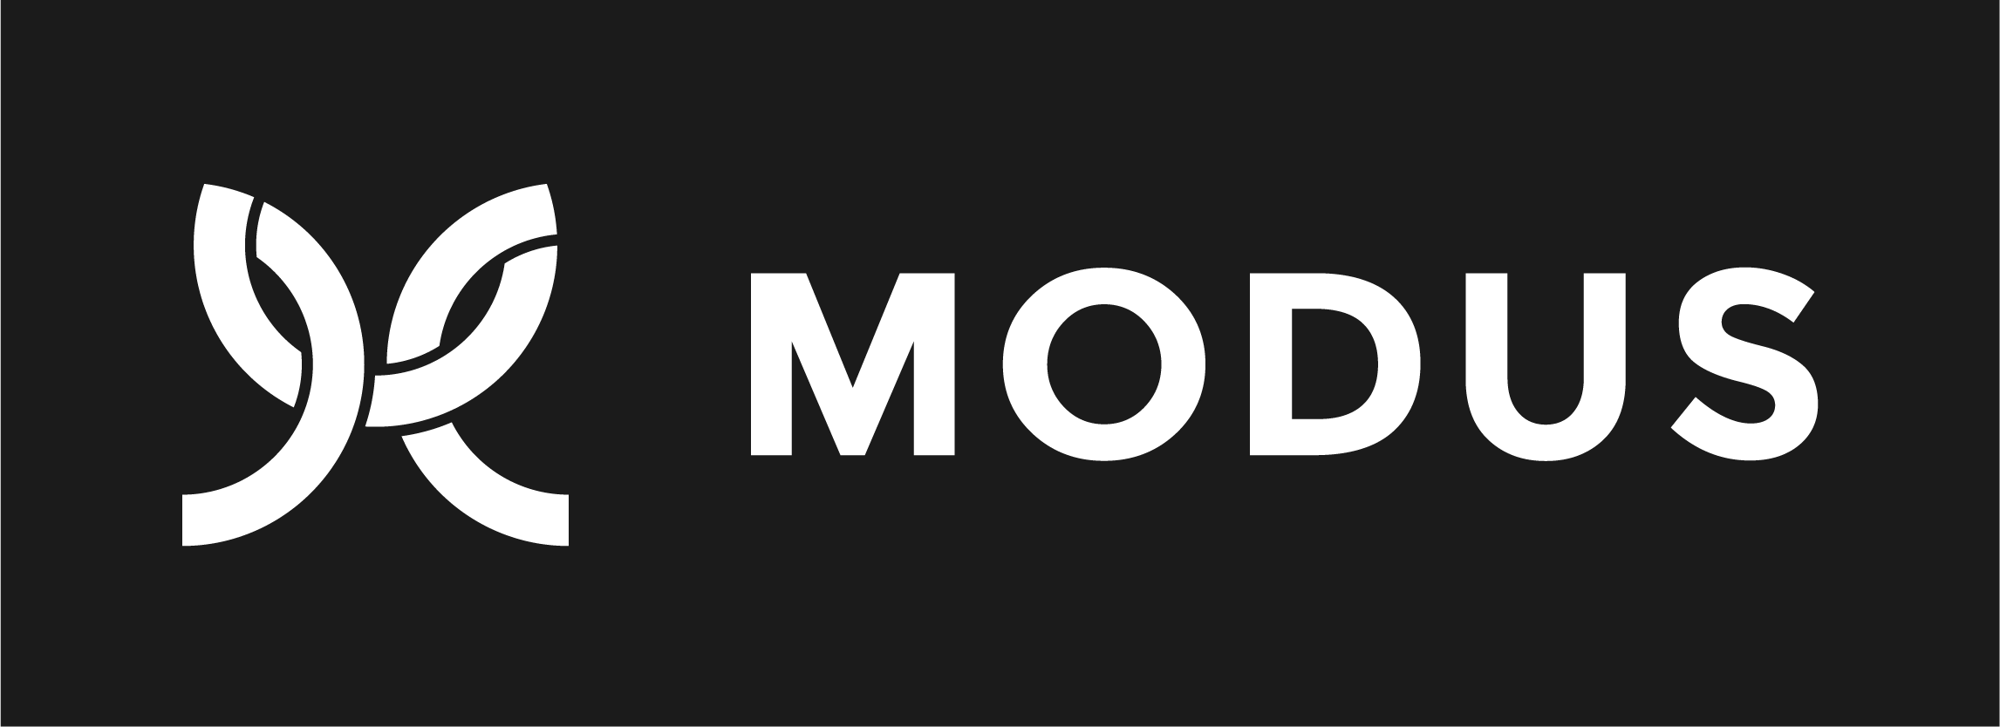 Modus-Logo-Primary-White